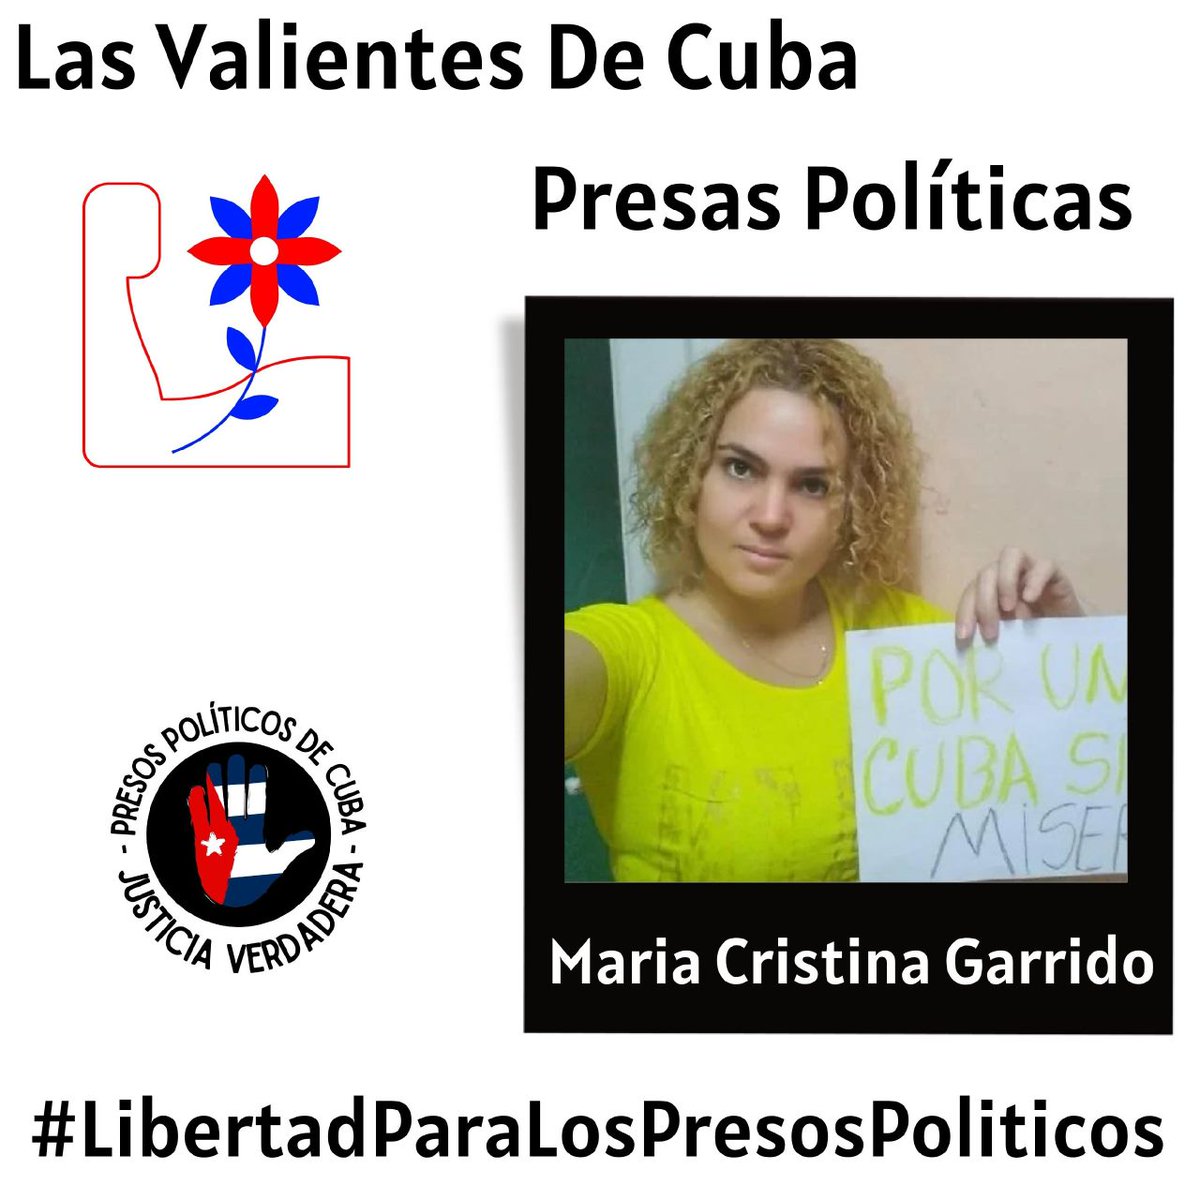 ¡Libertad para #MariaCristinaGarrido!
Cuándo un cubano valiente levanta la voz contra la Dictadura, y termina trás las rejas por eso, merece todo el respeto y apoyo del mundo.
.
.
#PresosDeCastro 
#HastaQueSeanLibres 
#LibertadParaLodPresosPoliticos